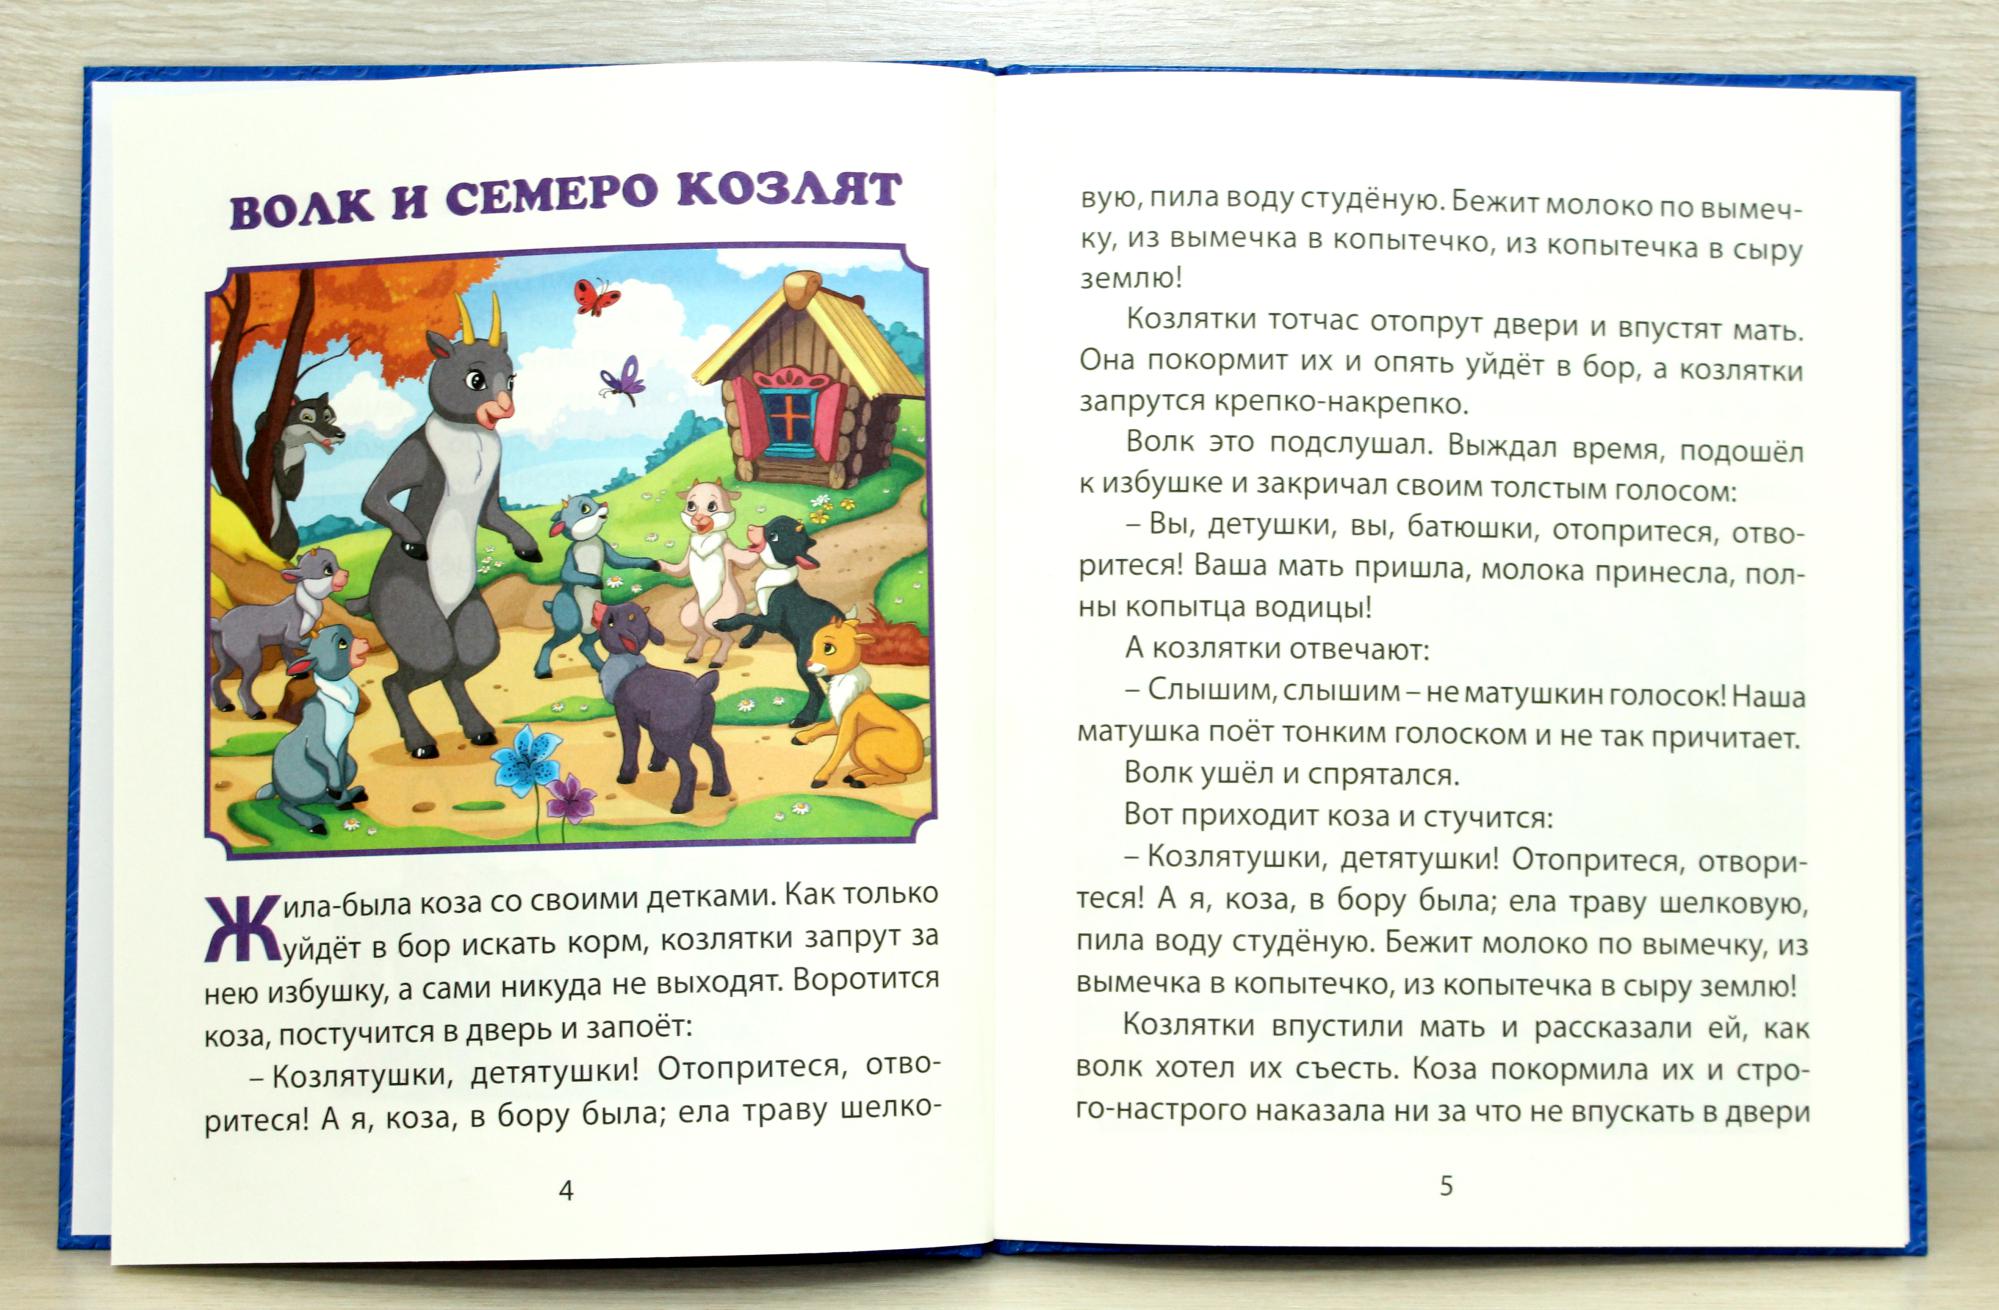 Какие сказки и рассказы почитать детям 4-5 лет? список сказок и рассказов для детей 4-5 лет.